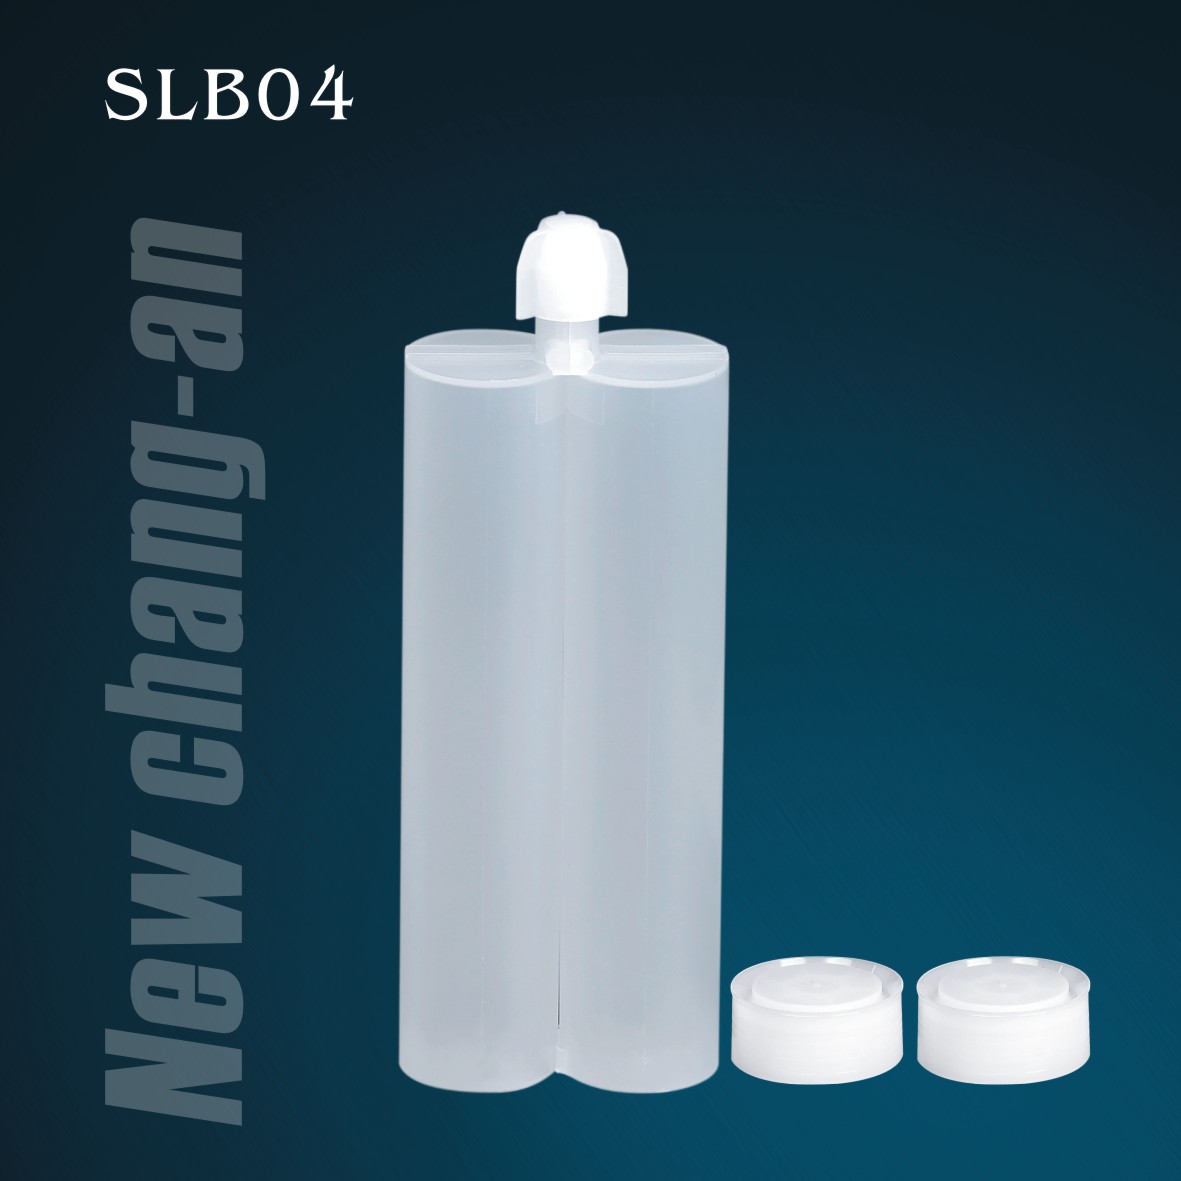 320 ml: Cartucho doble de dos componentes de 320 ml para el paquete A + B Adhesivo SLB04